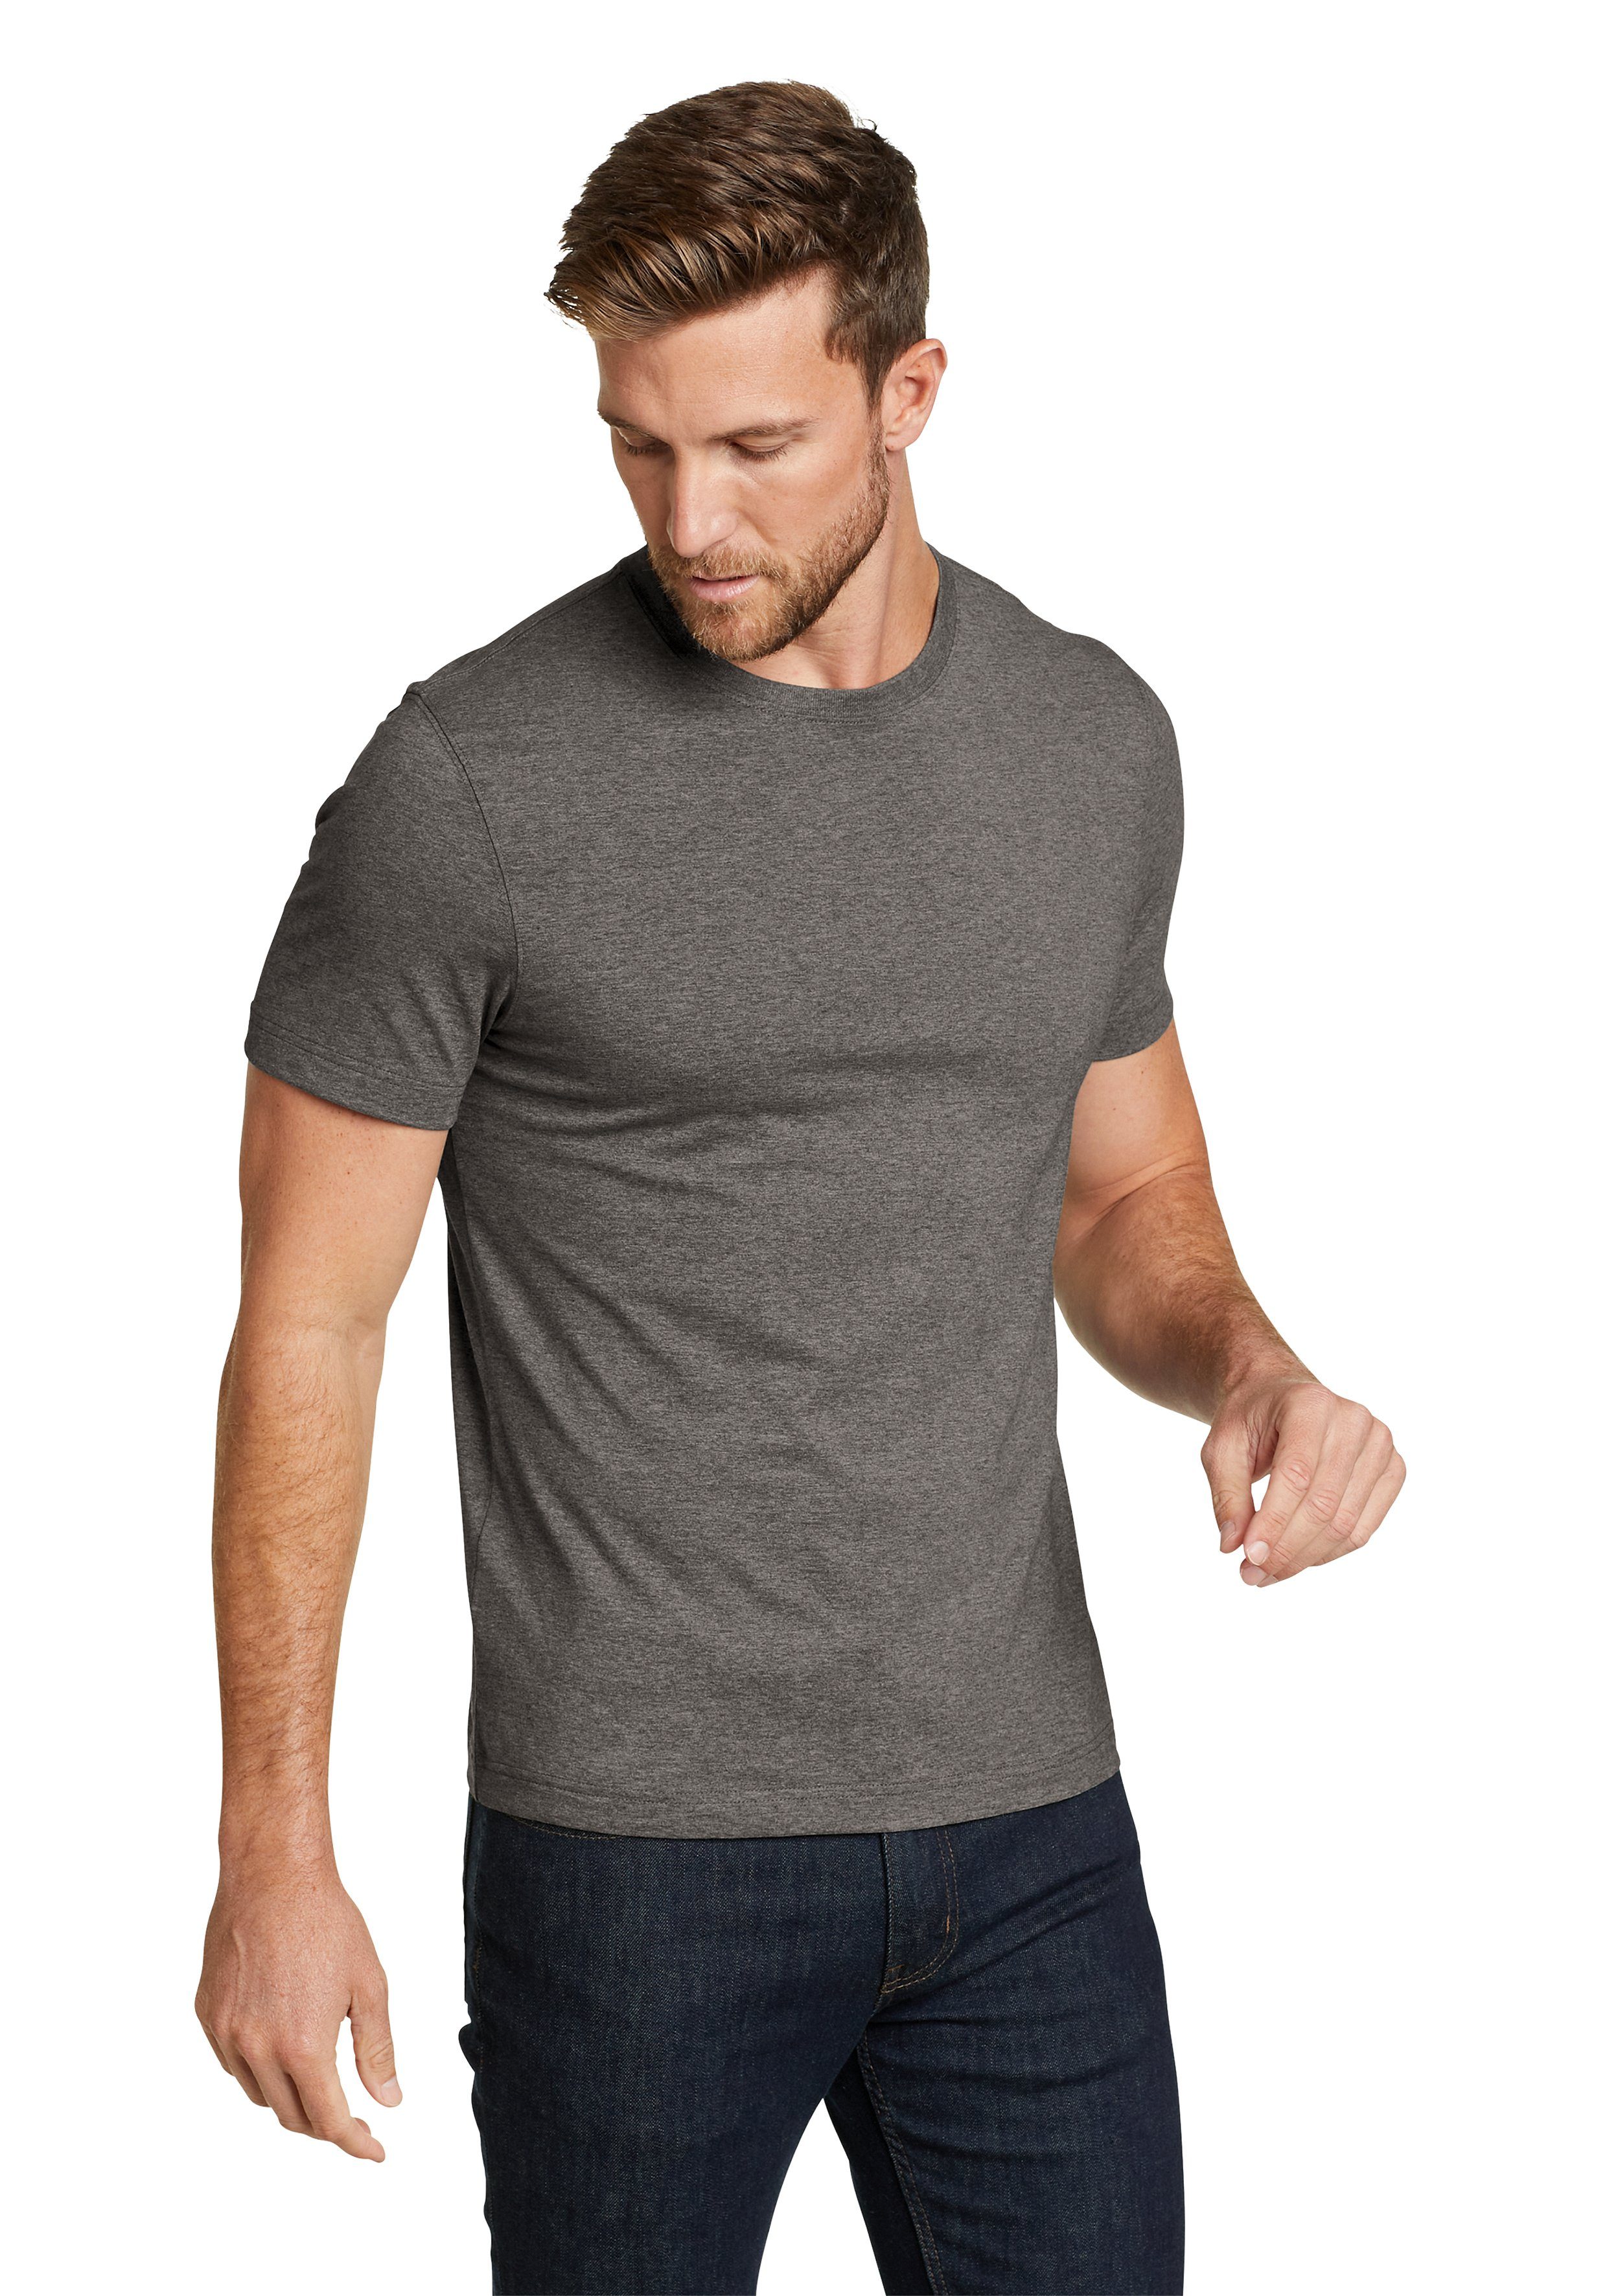 Eddie Bauer T-Shirt Legend Wash Shirt - 100% Baumwolle - Slim fit Dunkle Kohle meliert